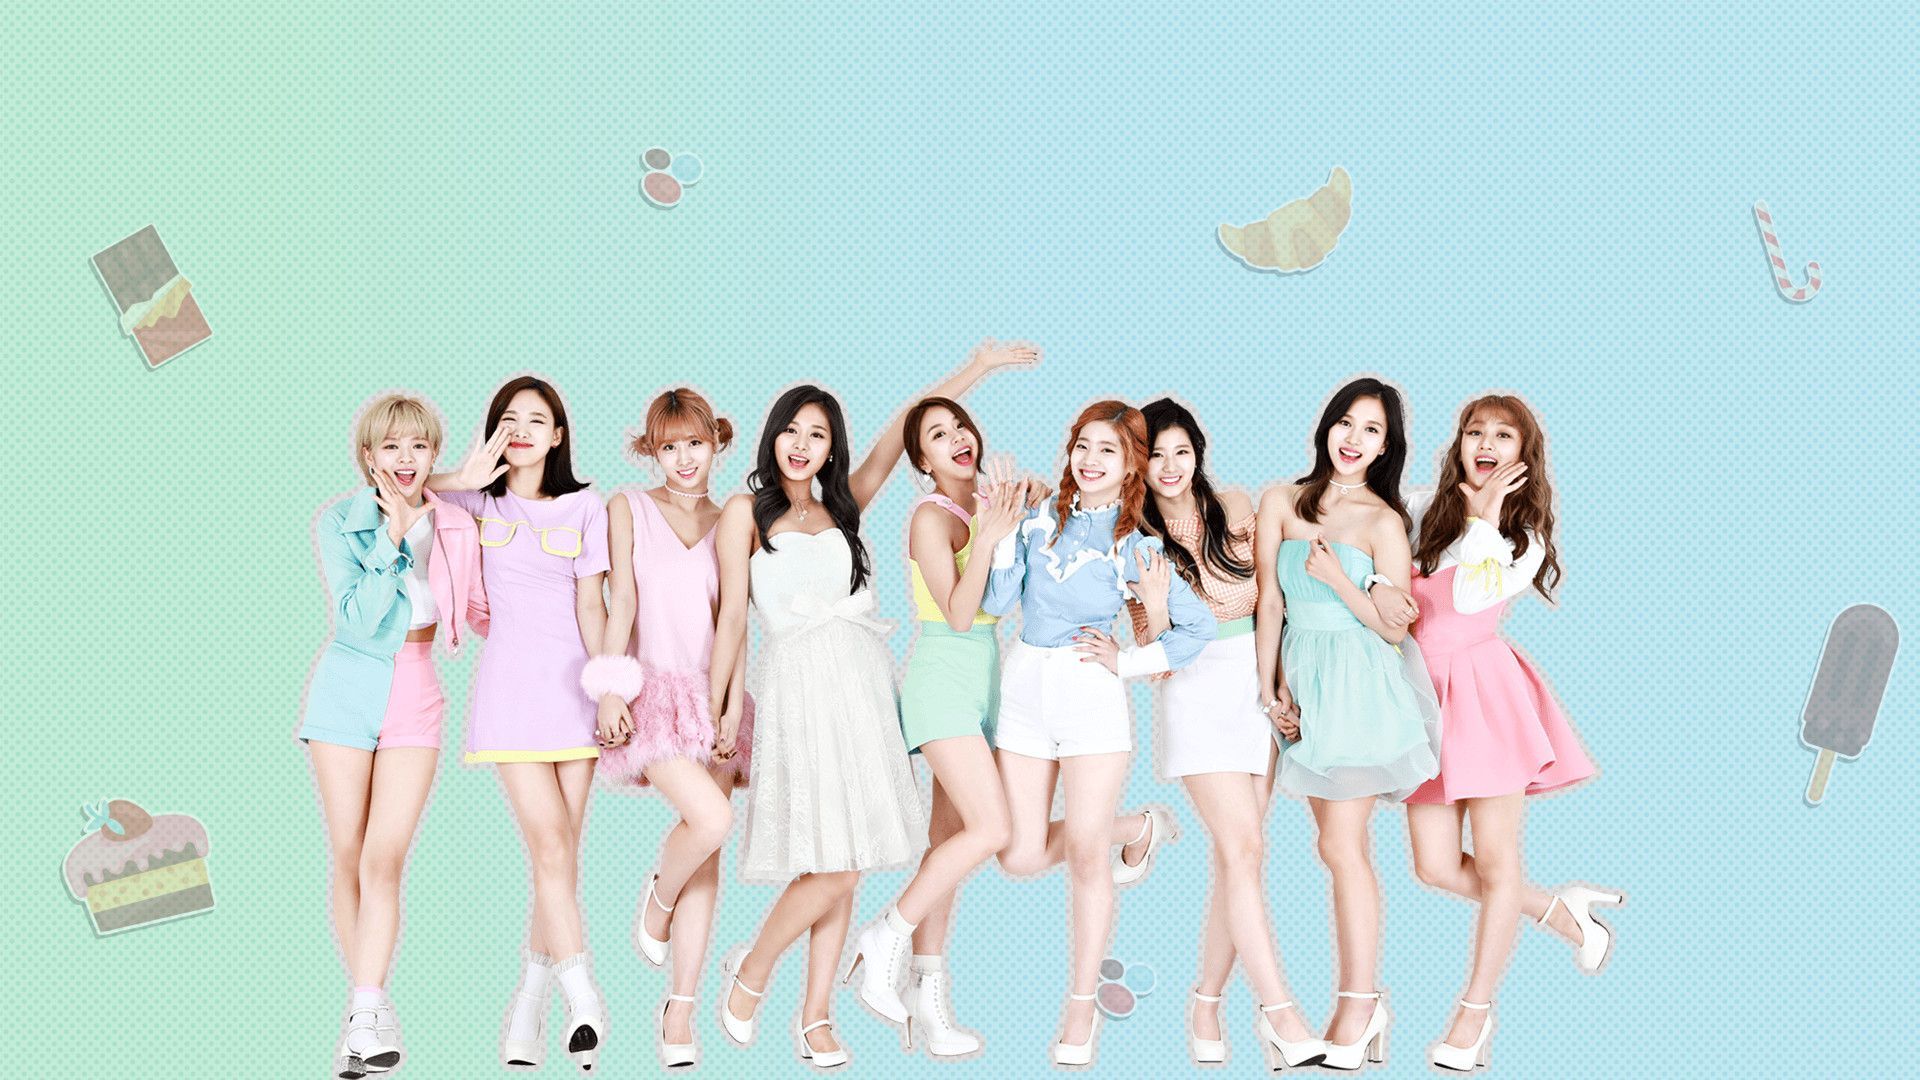 тwιce wallpaperѕ on Twitter | Kpop girl groups, Twice photoshoot, Twice